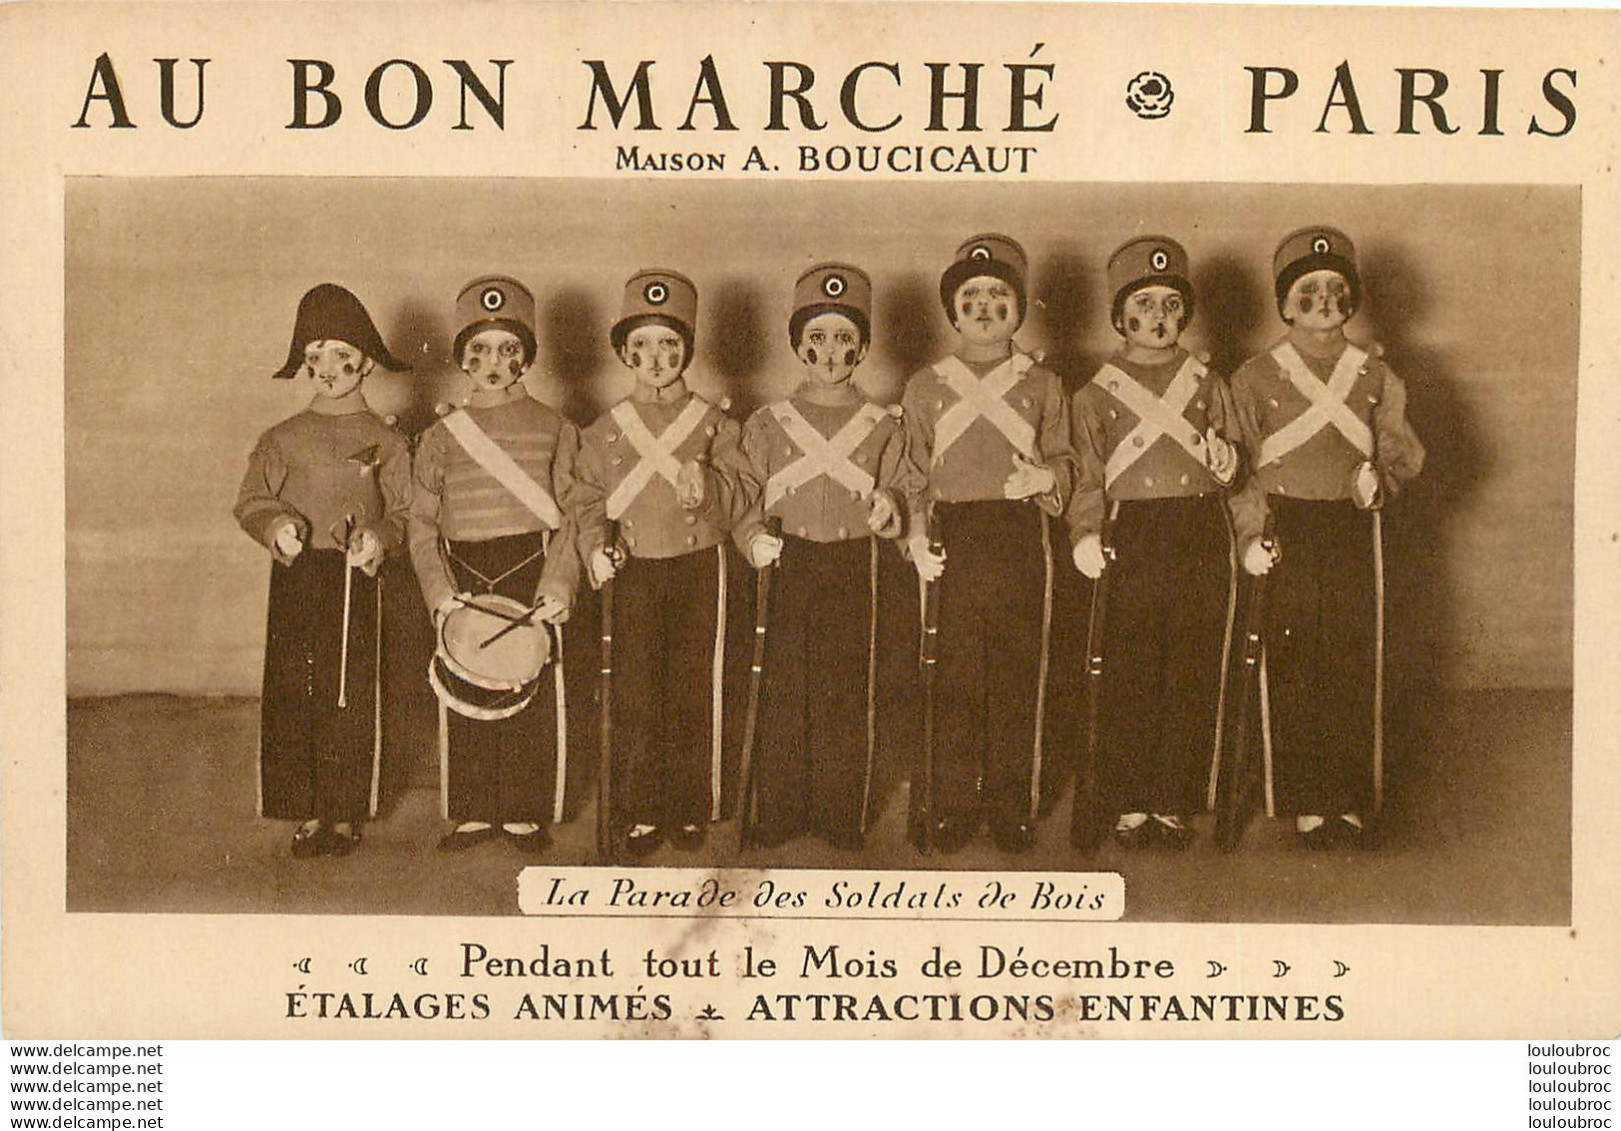 AU BON MARCHE PARIS MAISON BOUCICAUT LA PARADE DES SOLDATS DE BOIS - Shops